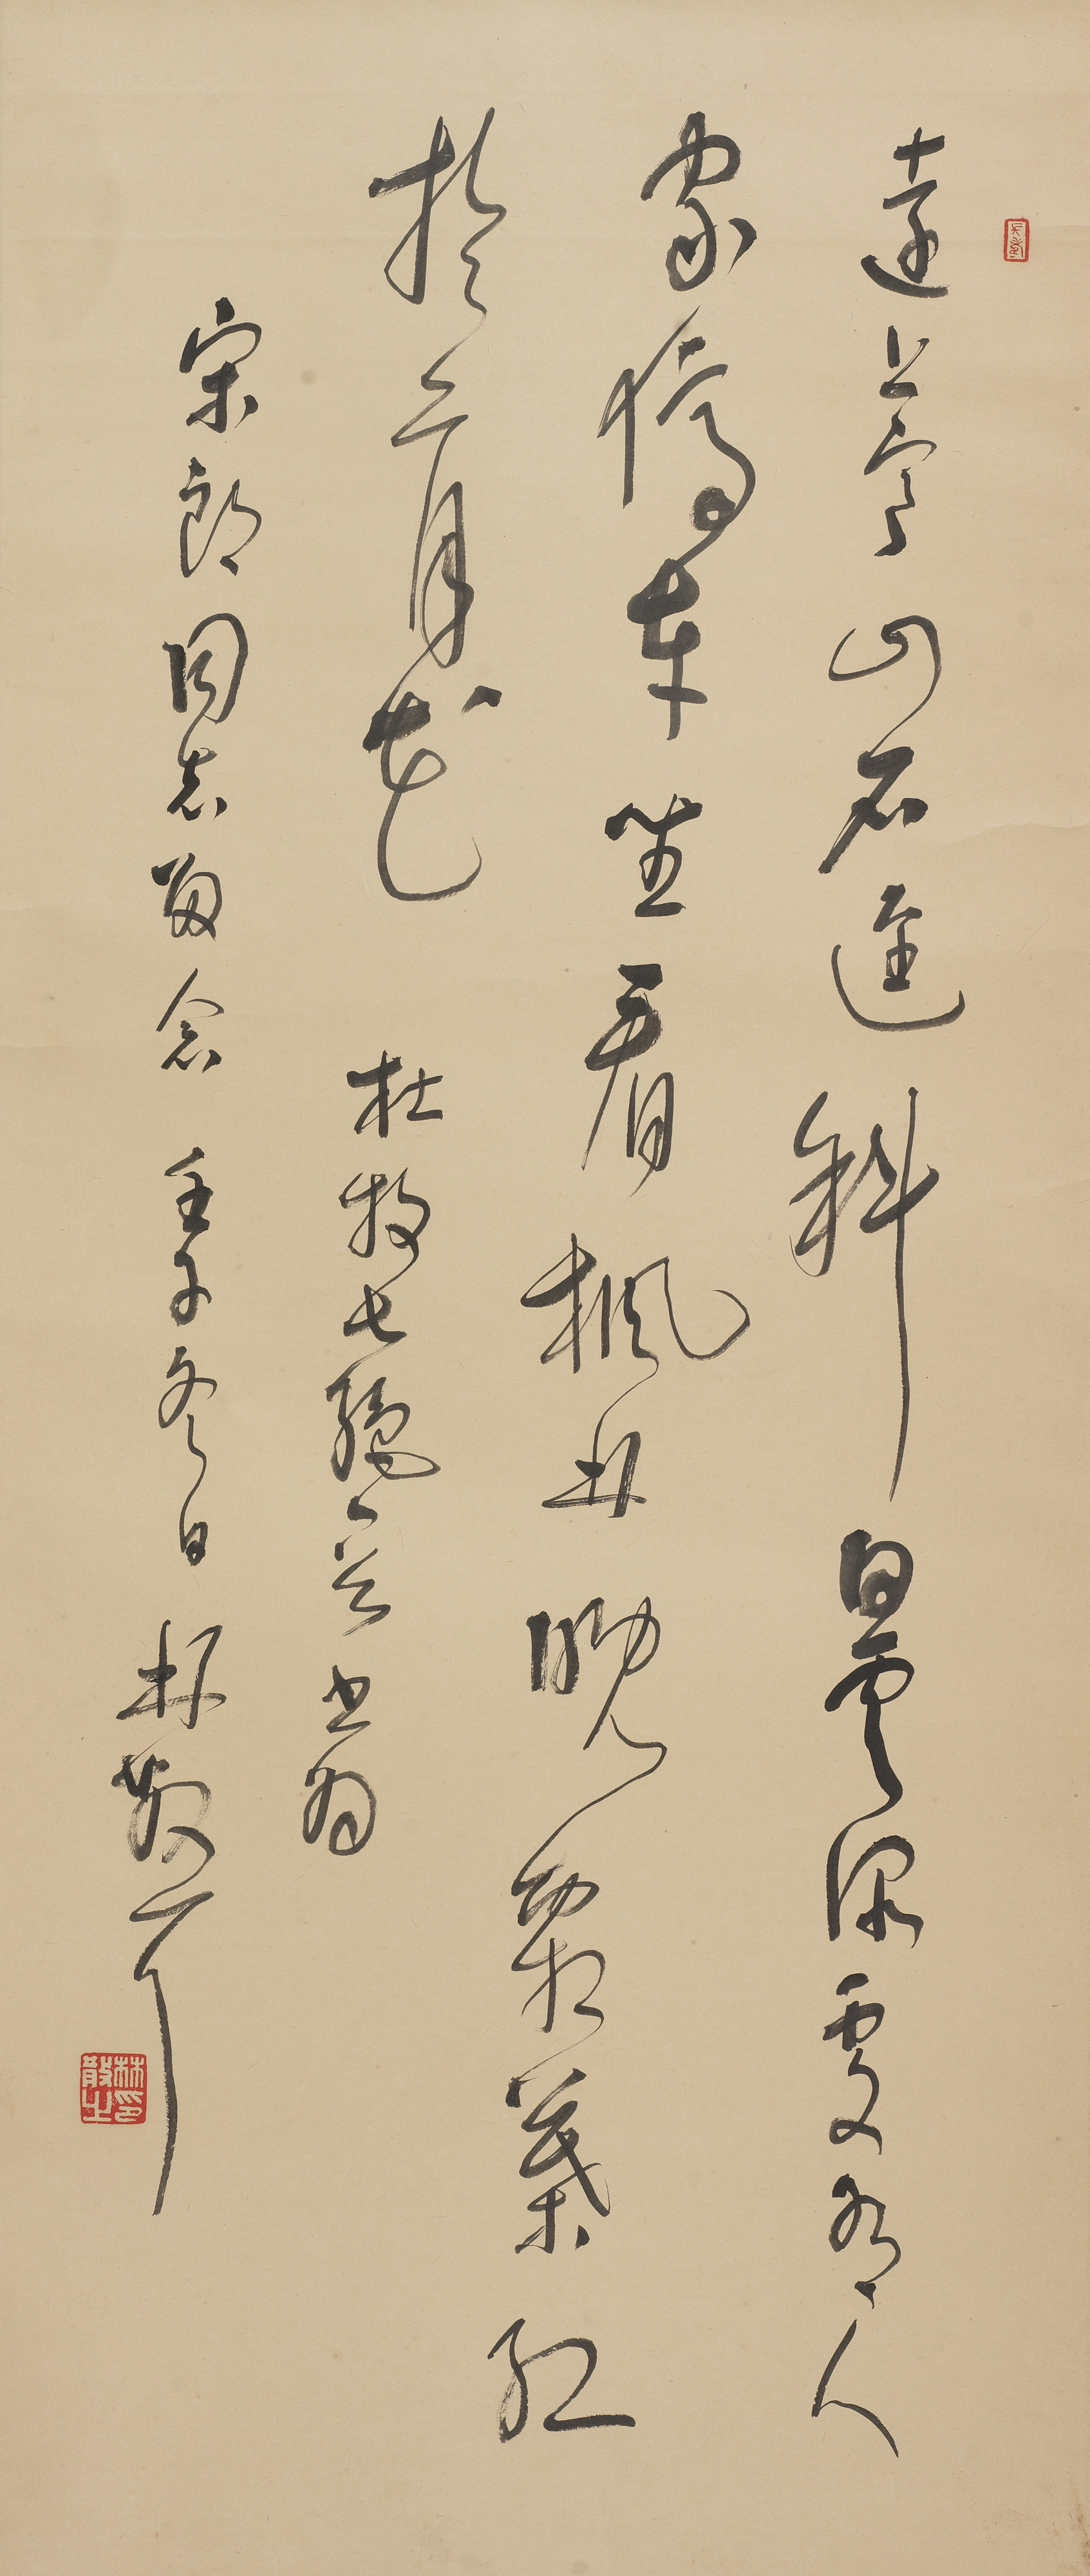 此作品为著名画家黄养辉旧藏,对联边款小字清楚楚楚交代了作品创作的